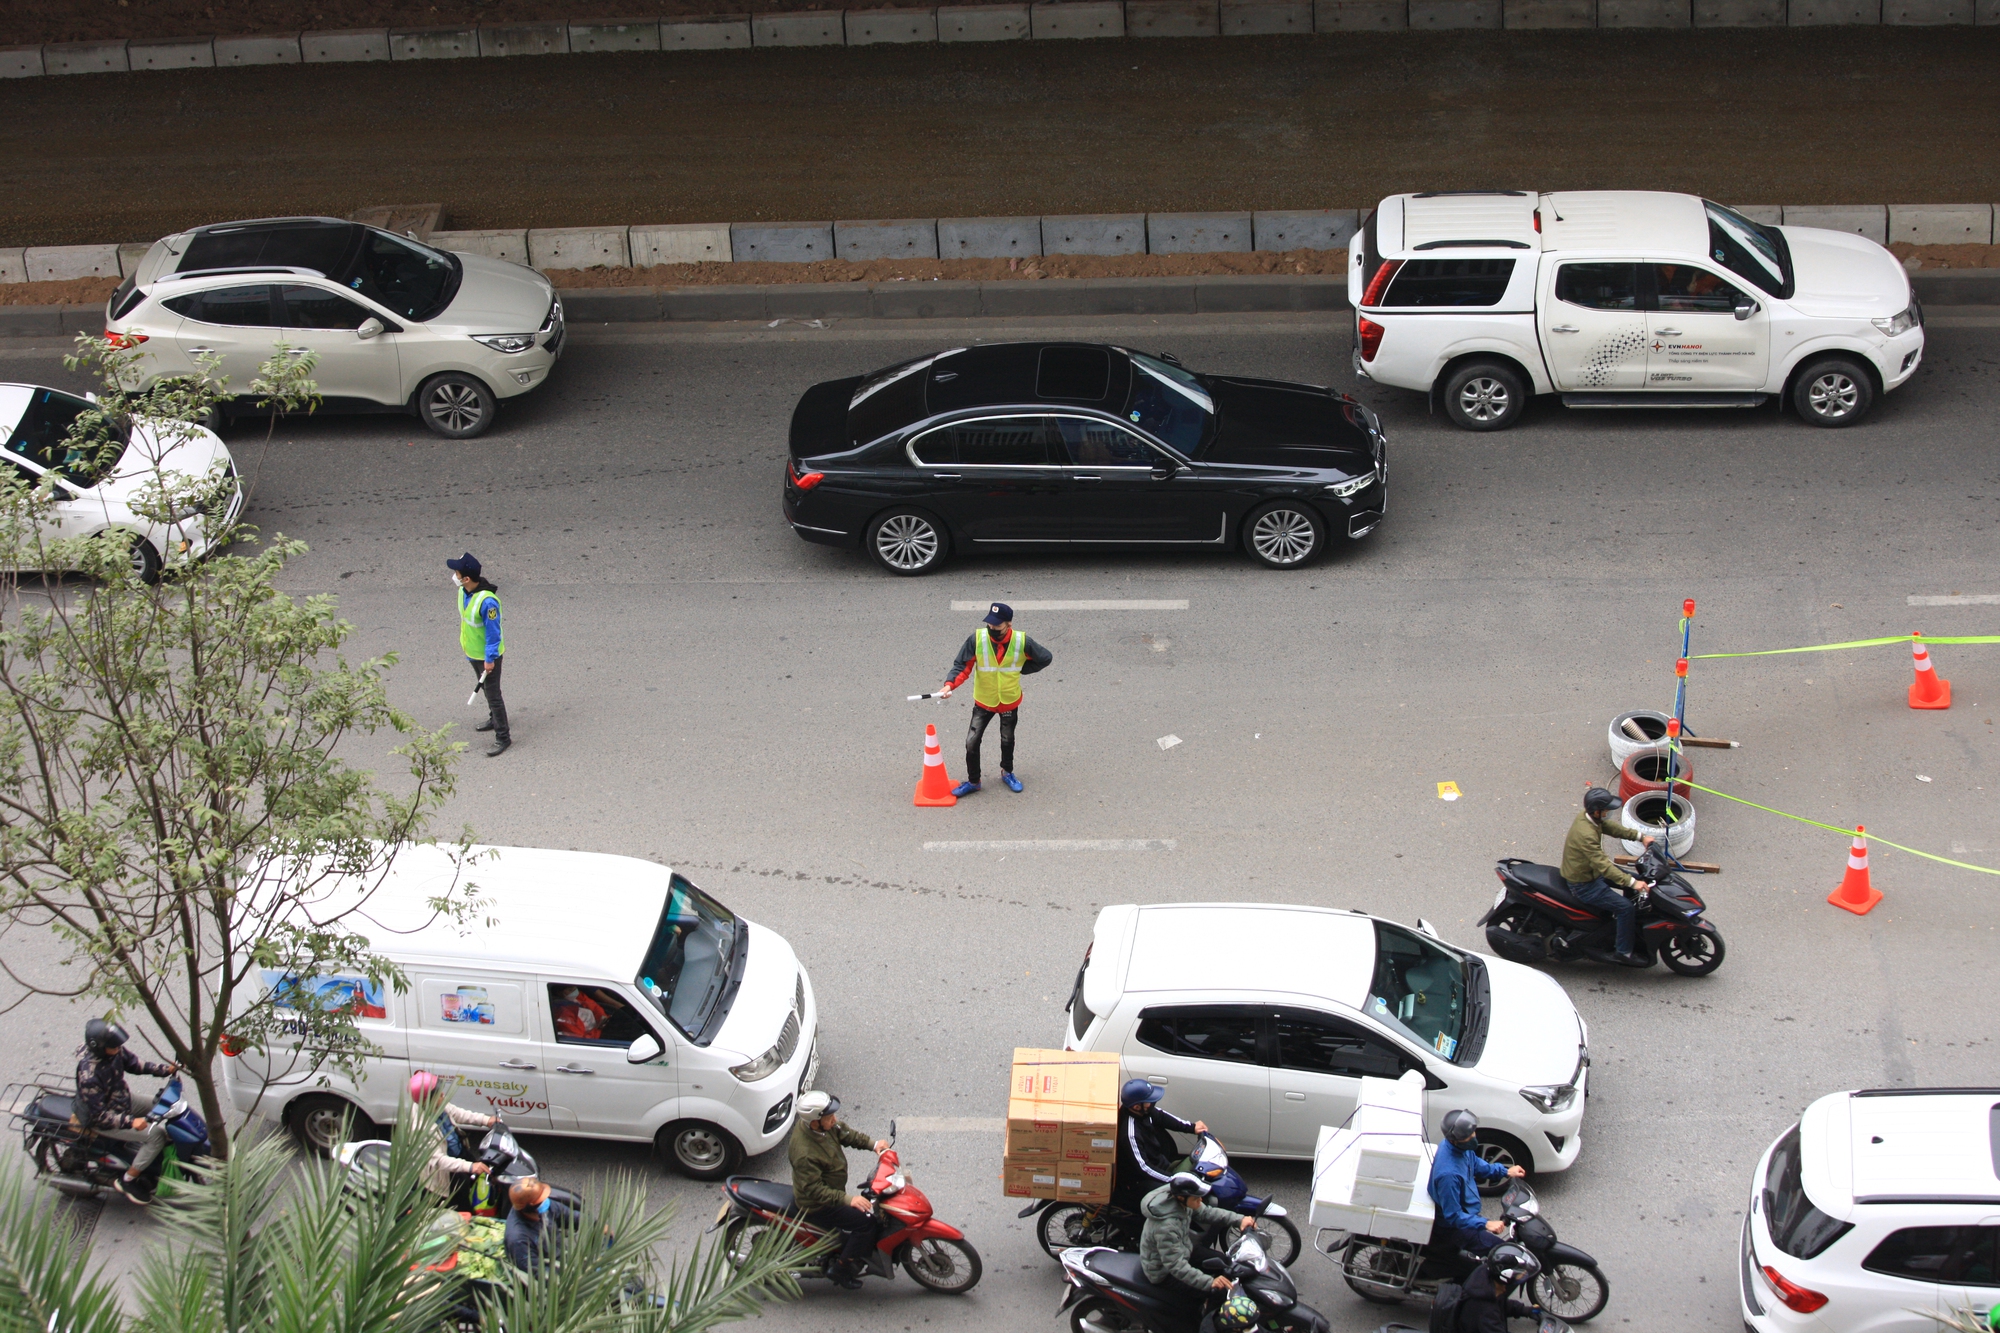 Gấp rút ngày đêm mở rộng đường Nguyễn Xiển giảm ùn tắc giao thông - Ảnh 8.